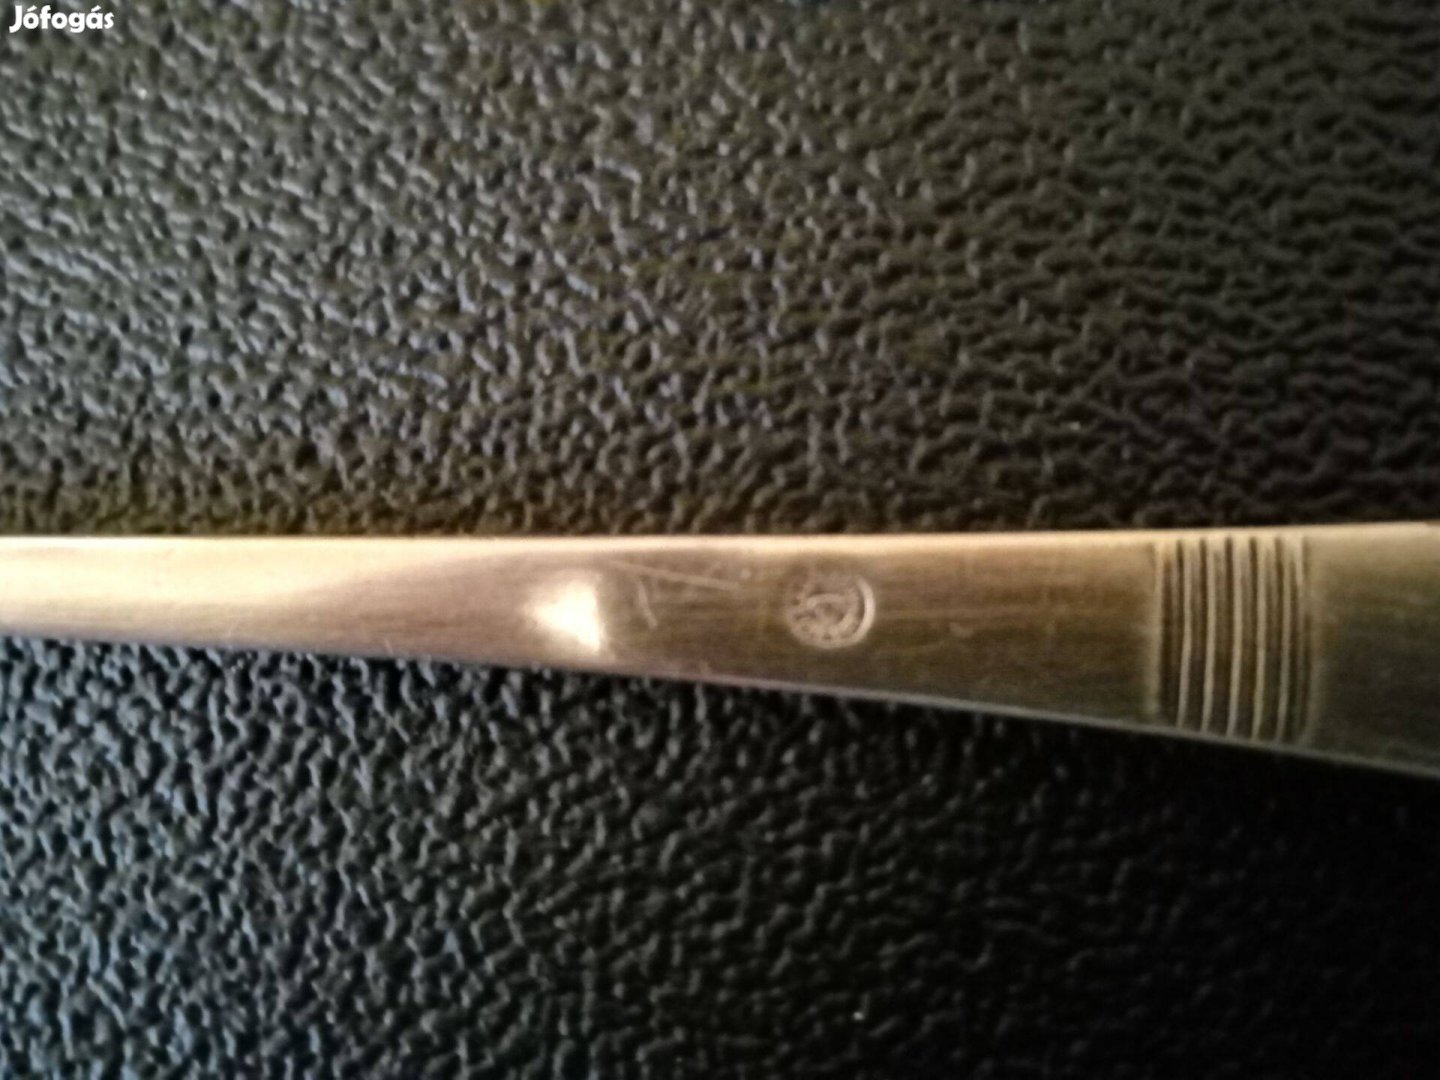 Eladó antik ezüstözött tálaló kés